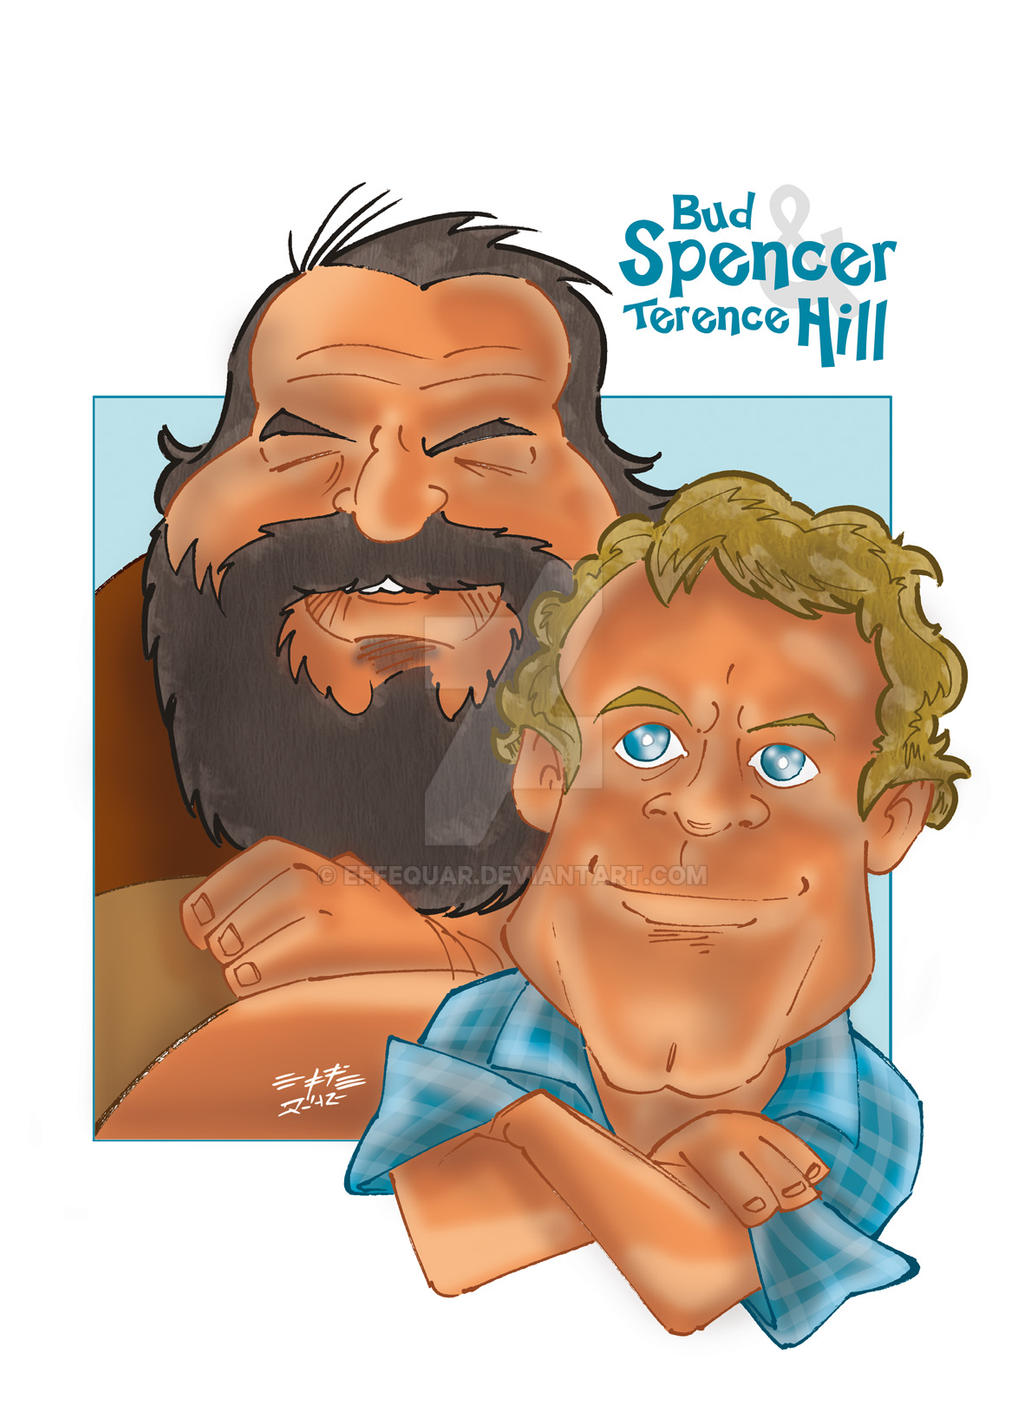 Bud Spencer e Terence Hill by effequar on DeviantArt